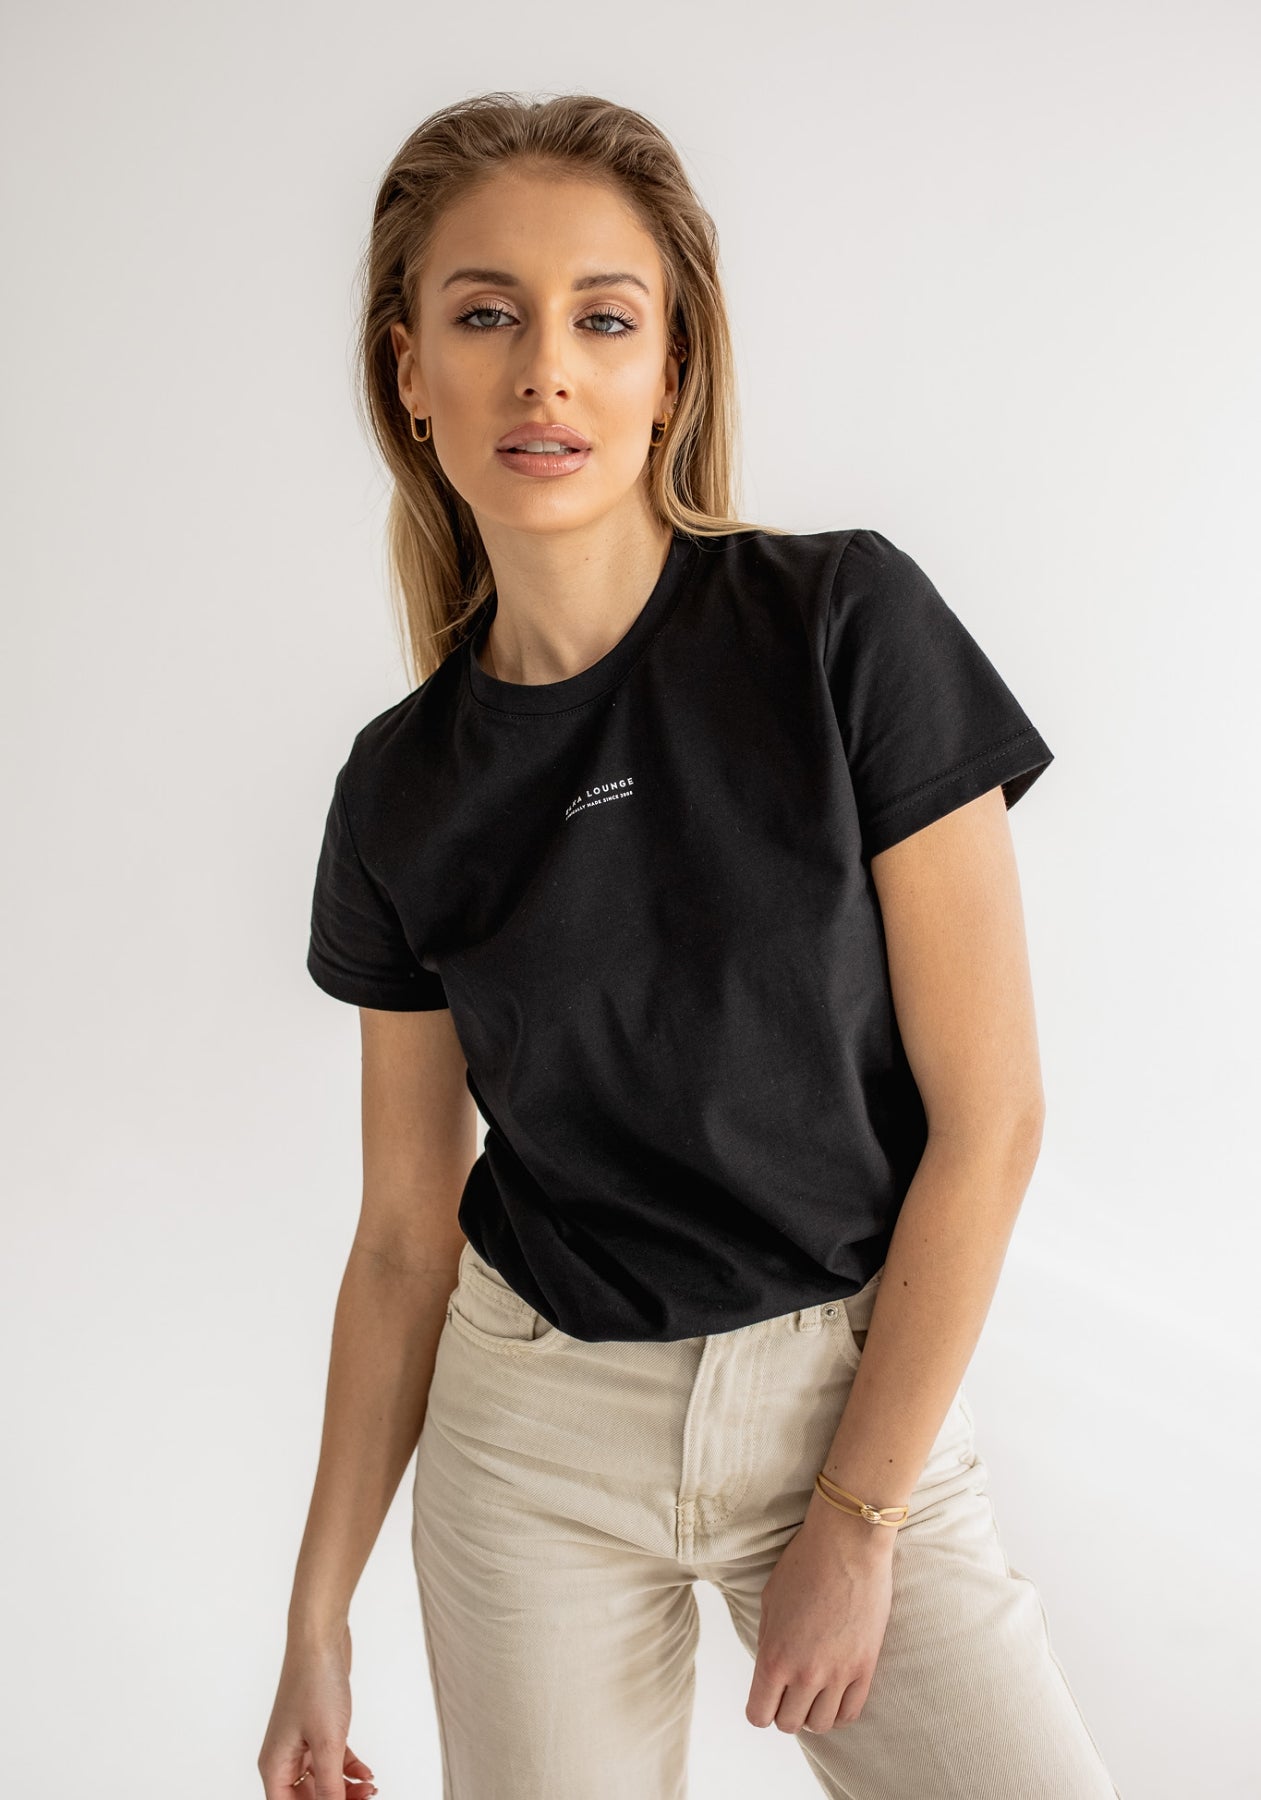 Women koszulka z bawełny organicznej Black - ethically made Minimalist - regular